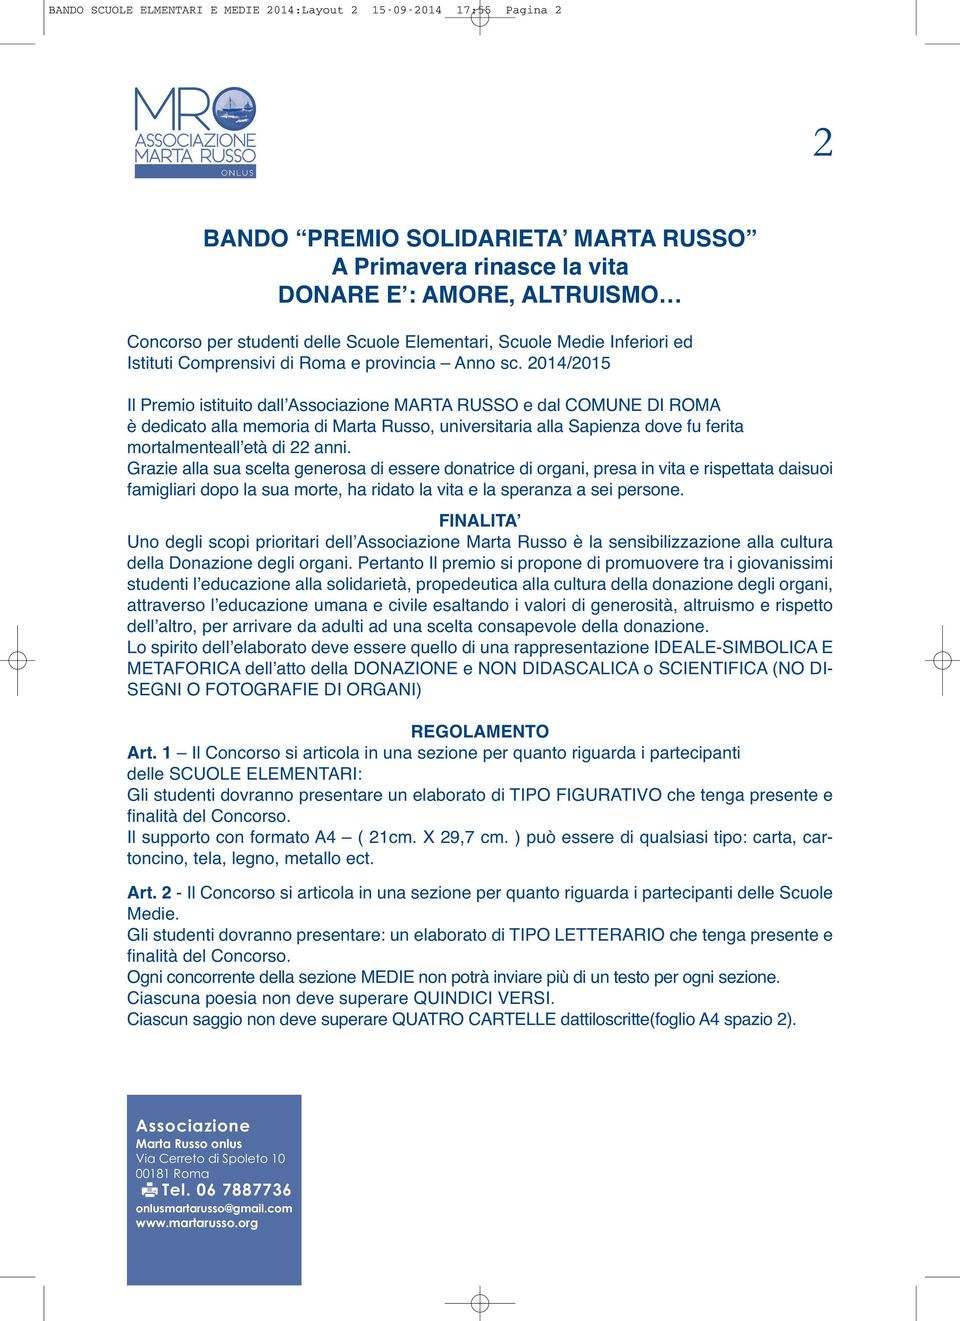 2014/2015 Il Premio istituito dall MARTA RUSSO e dal COMUNE DI ROMA è dedicato alla memoria di Marta Russo, universitaria alla Sapienza dove fu ferita mortalmenteall età di 22 anni.